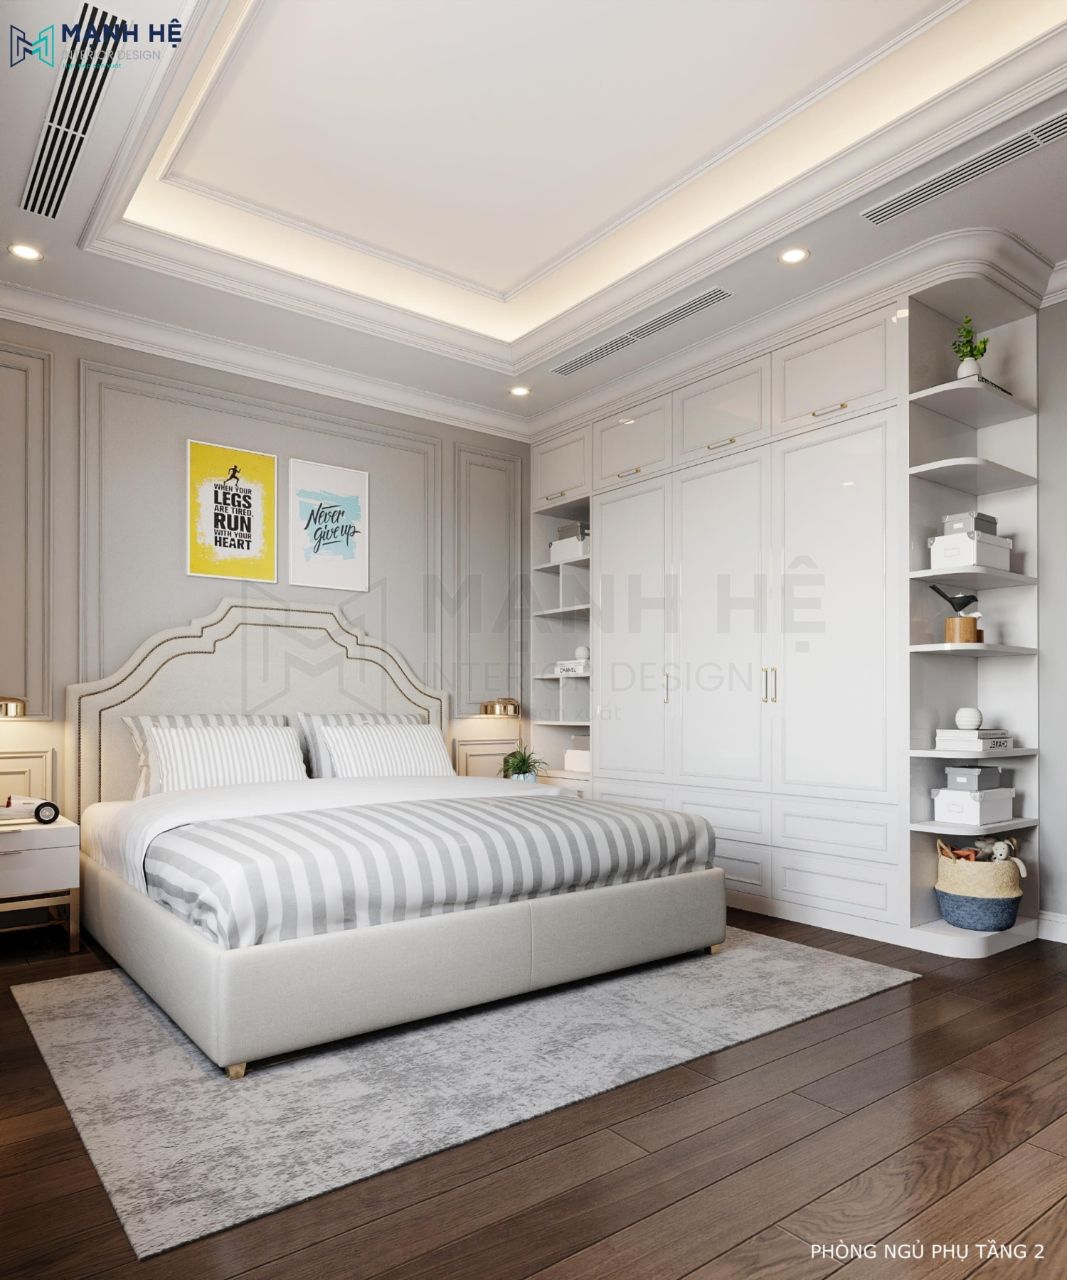 Nội thất phòng ngủ được thiết kế đơn giản mang lại cảm giác gọn gàng, sạch sẽ